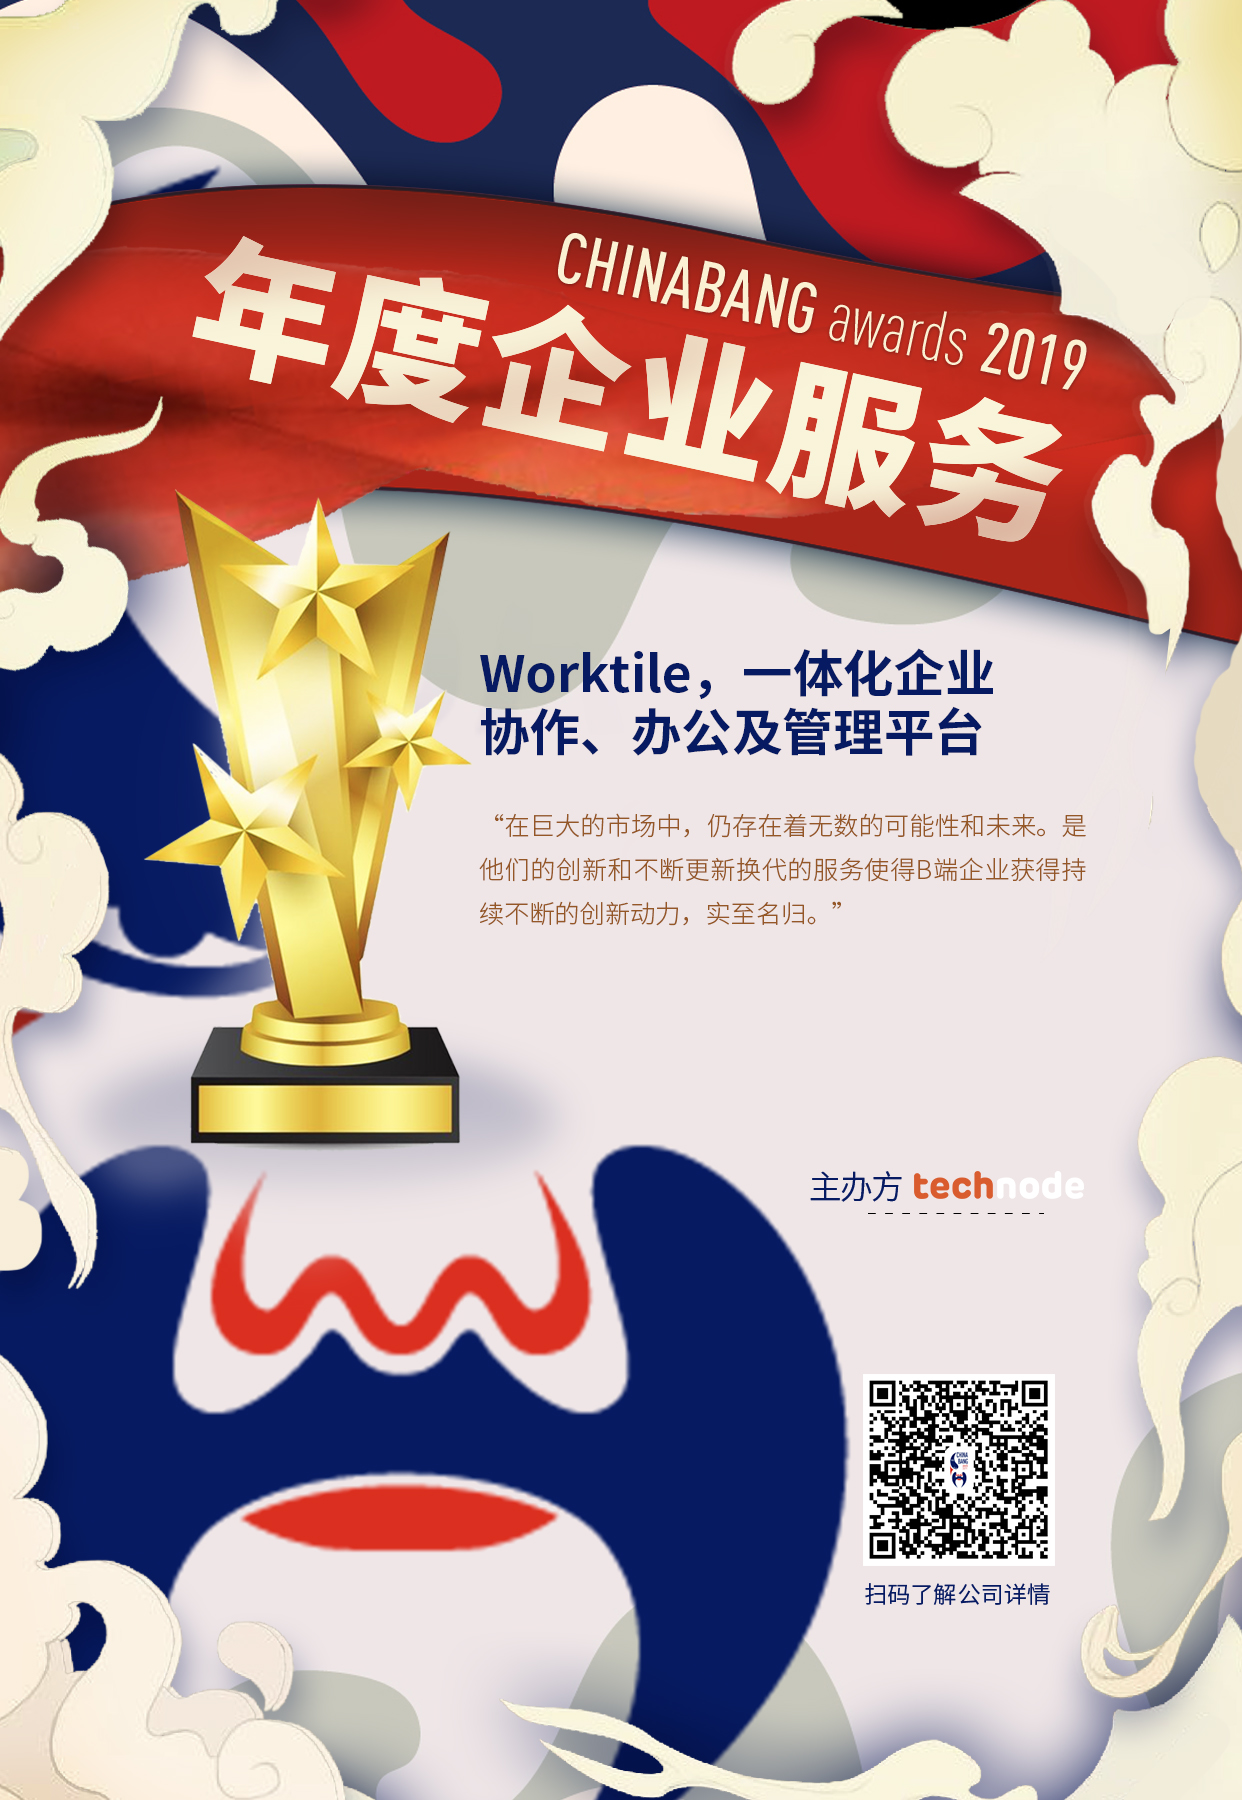 Worktile获奖海报-2019ChinaBang Awards.jpg